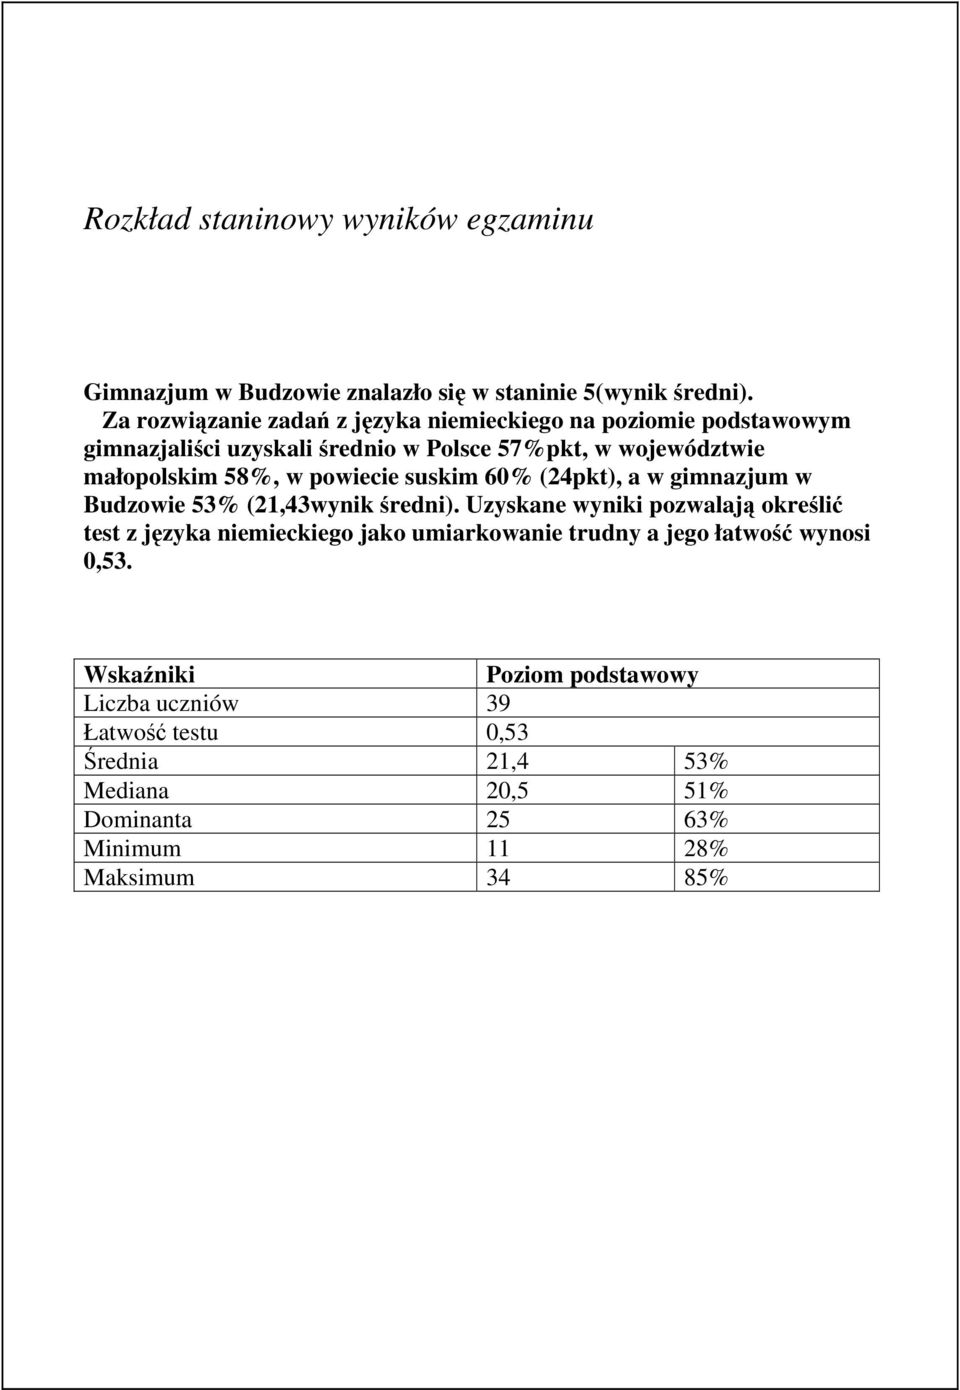 w powiecie suskim 60% (24pkt), a w gimnazjum w Budzowie 53% (21,43wynik średni).